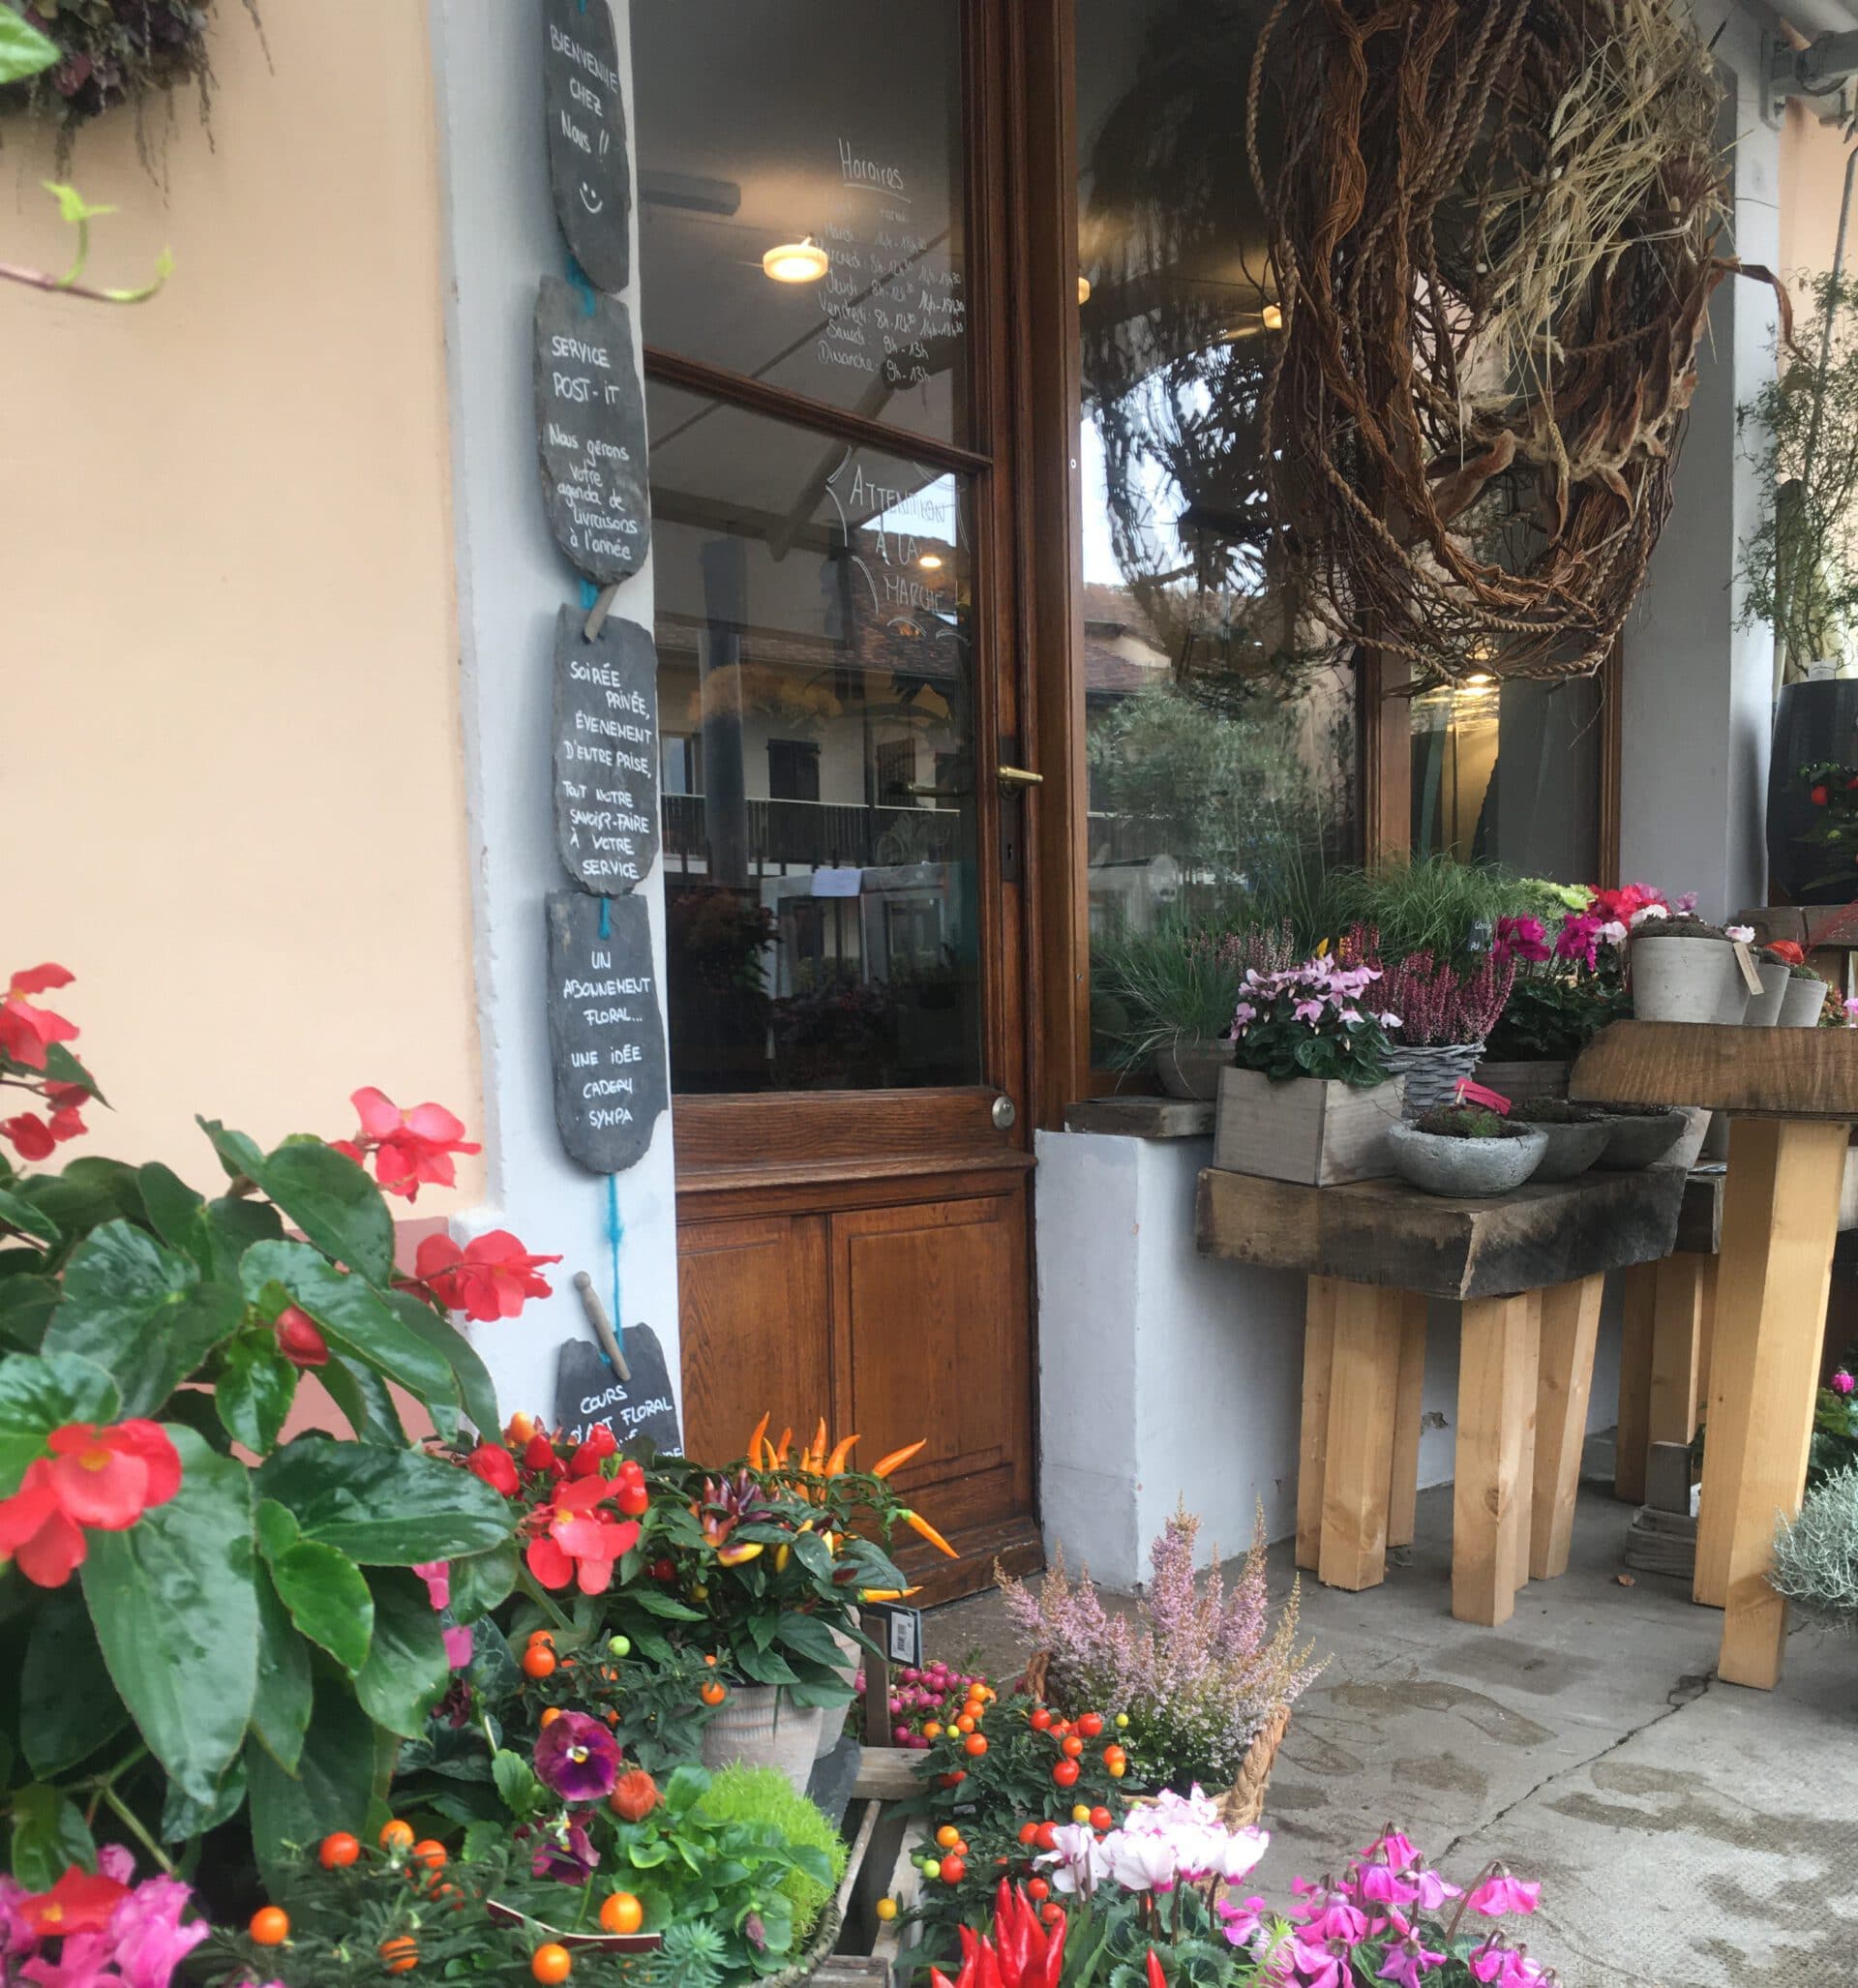 Présentation boutique de fleurs à Mies Chloé Savary